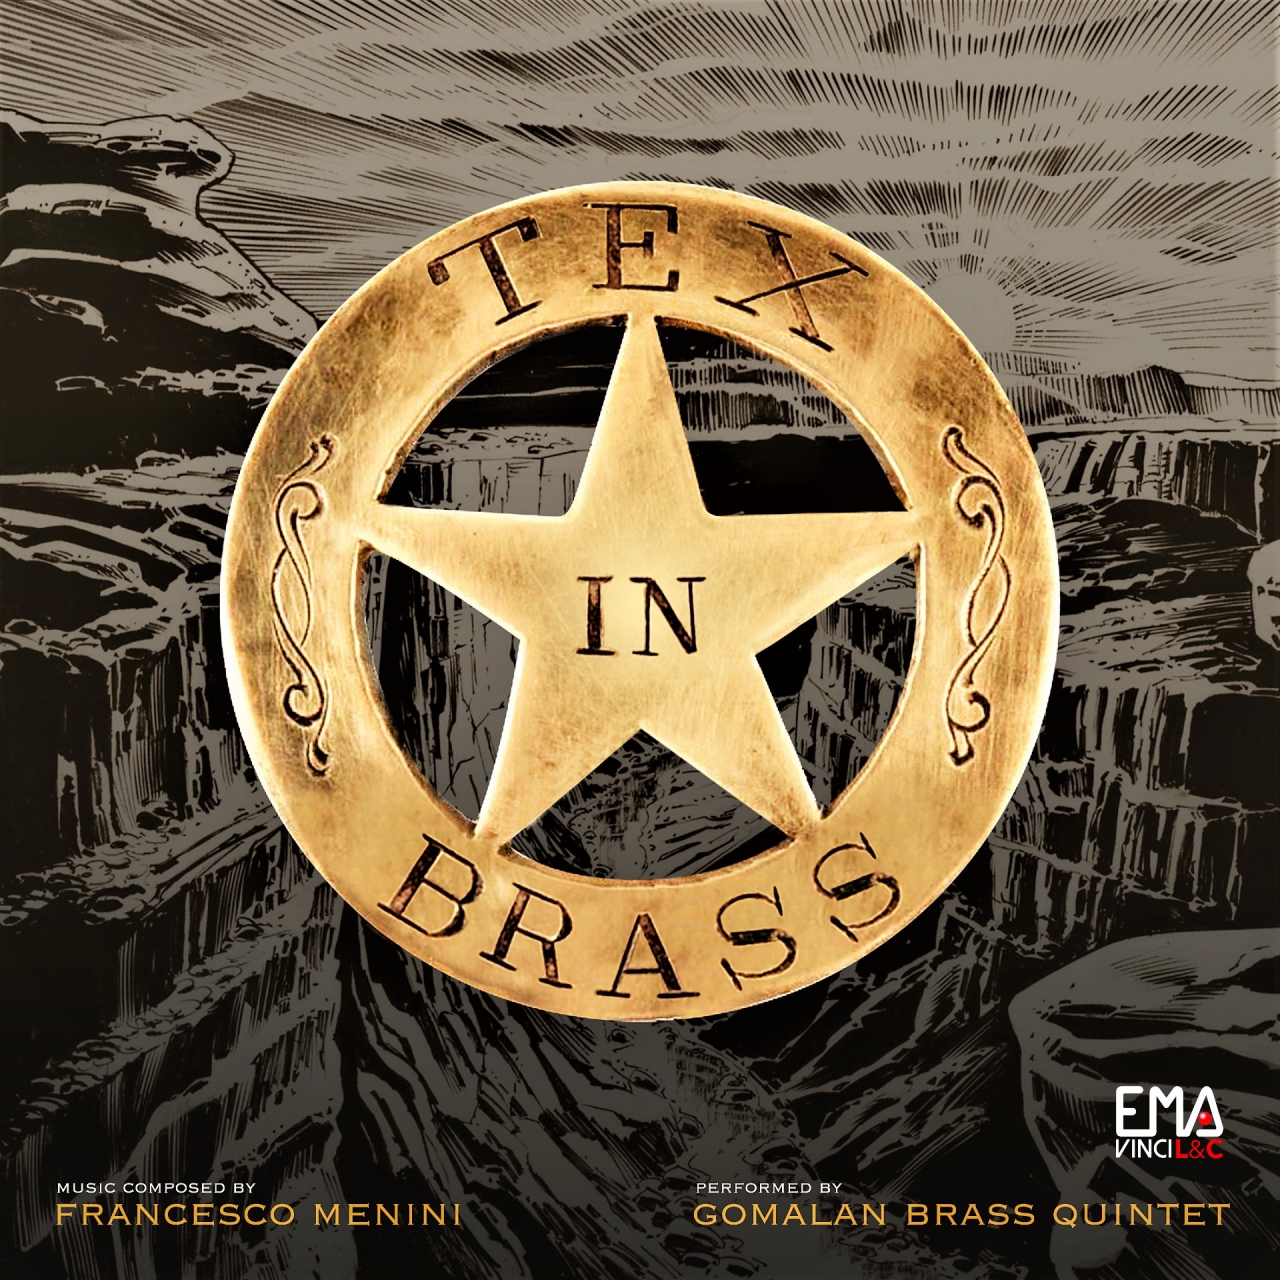 Tex in Brass in concorso per il 65th Annual Grammy Awards®